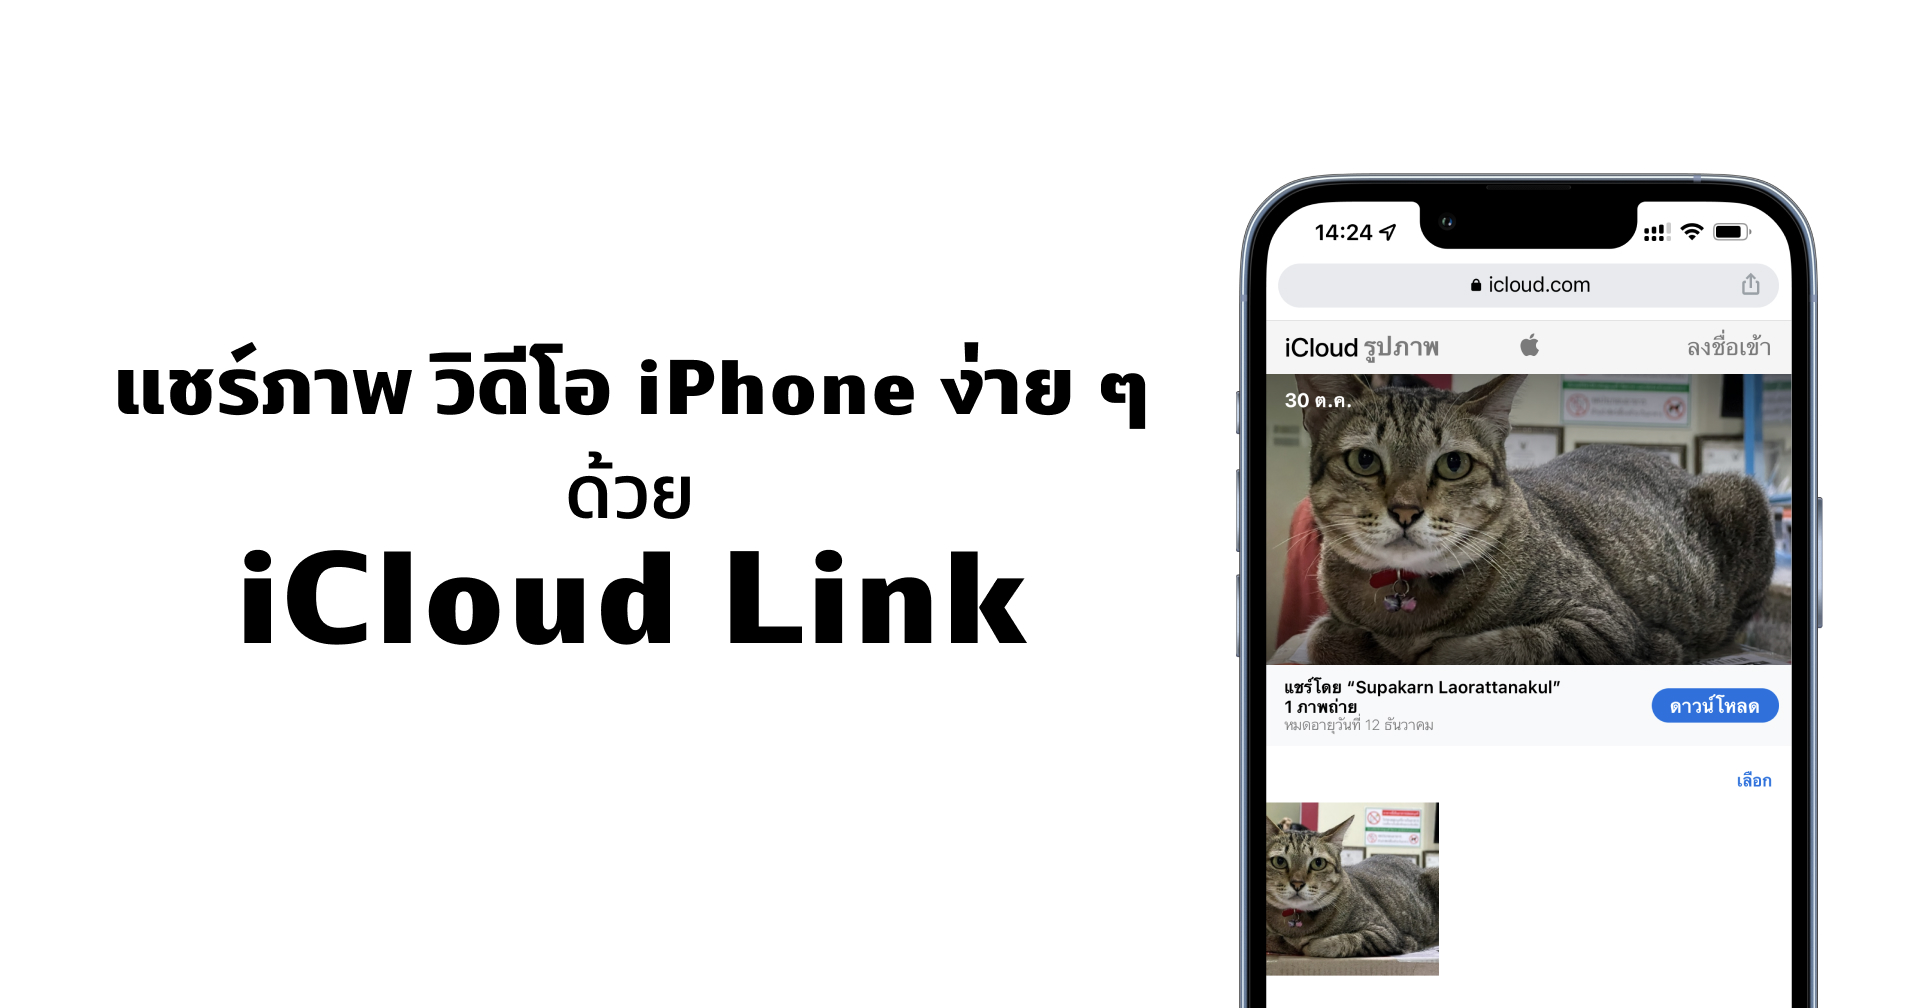 แชร์ภาพและวิดีโอเป็นลิงก์ให้ใครก็ได้โหลด แบบไม่เสียคุณภาพจาก iPhone ง่าย ๆ ด้วย iCloud Link